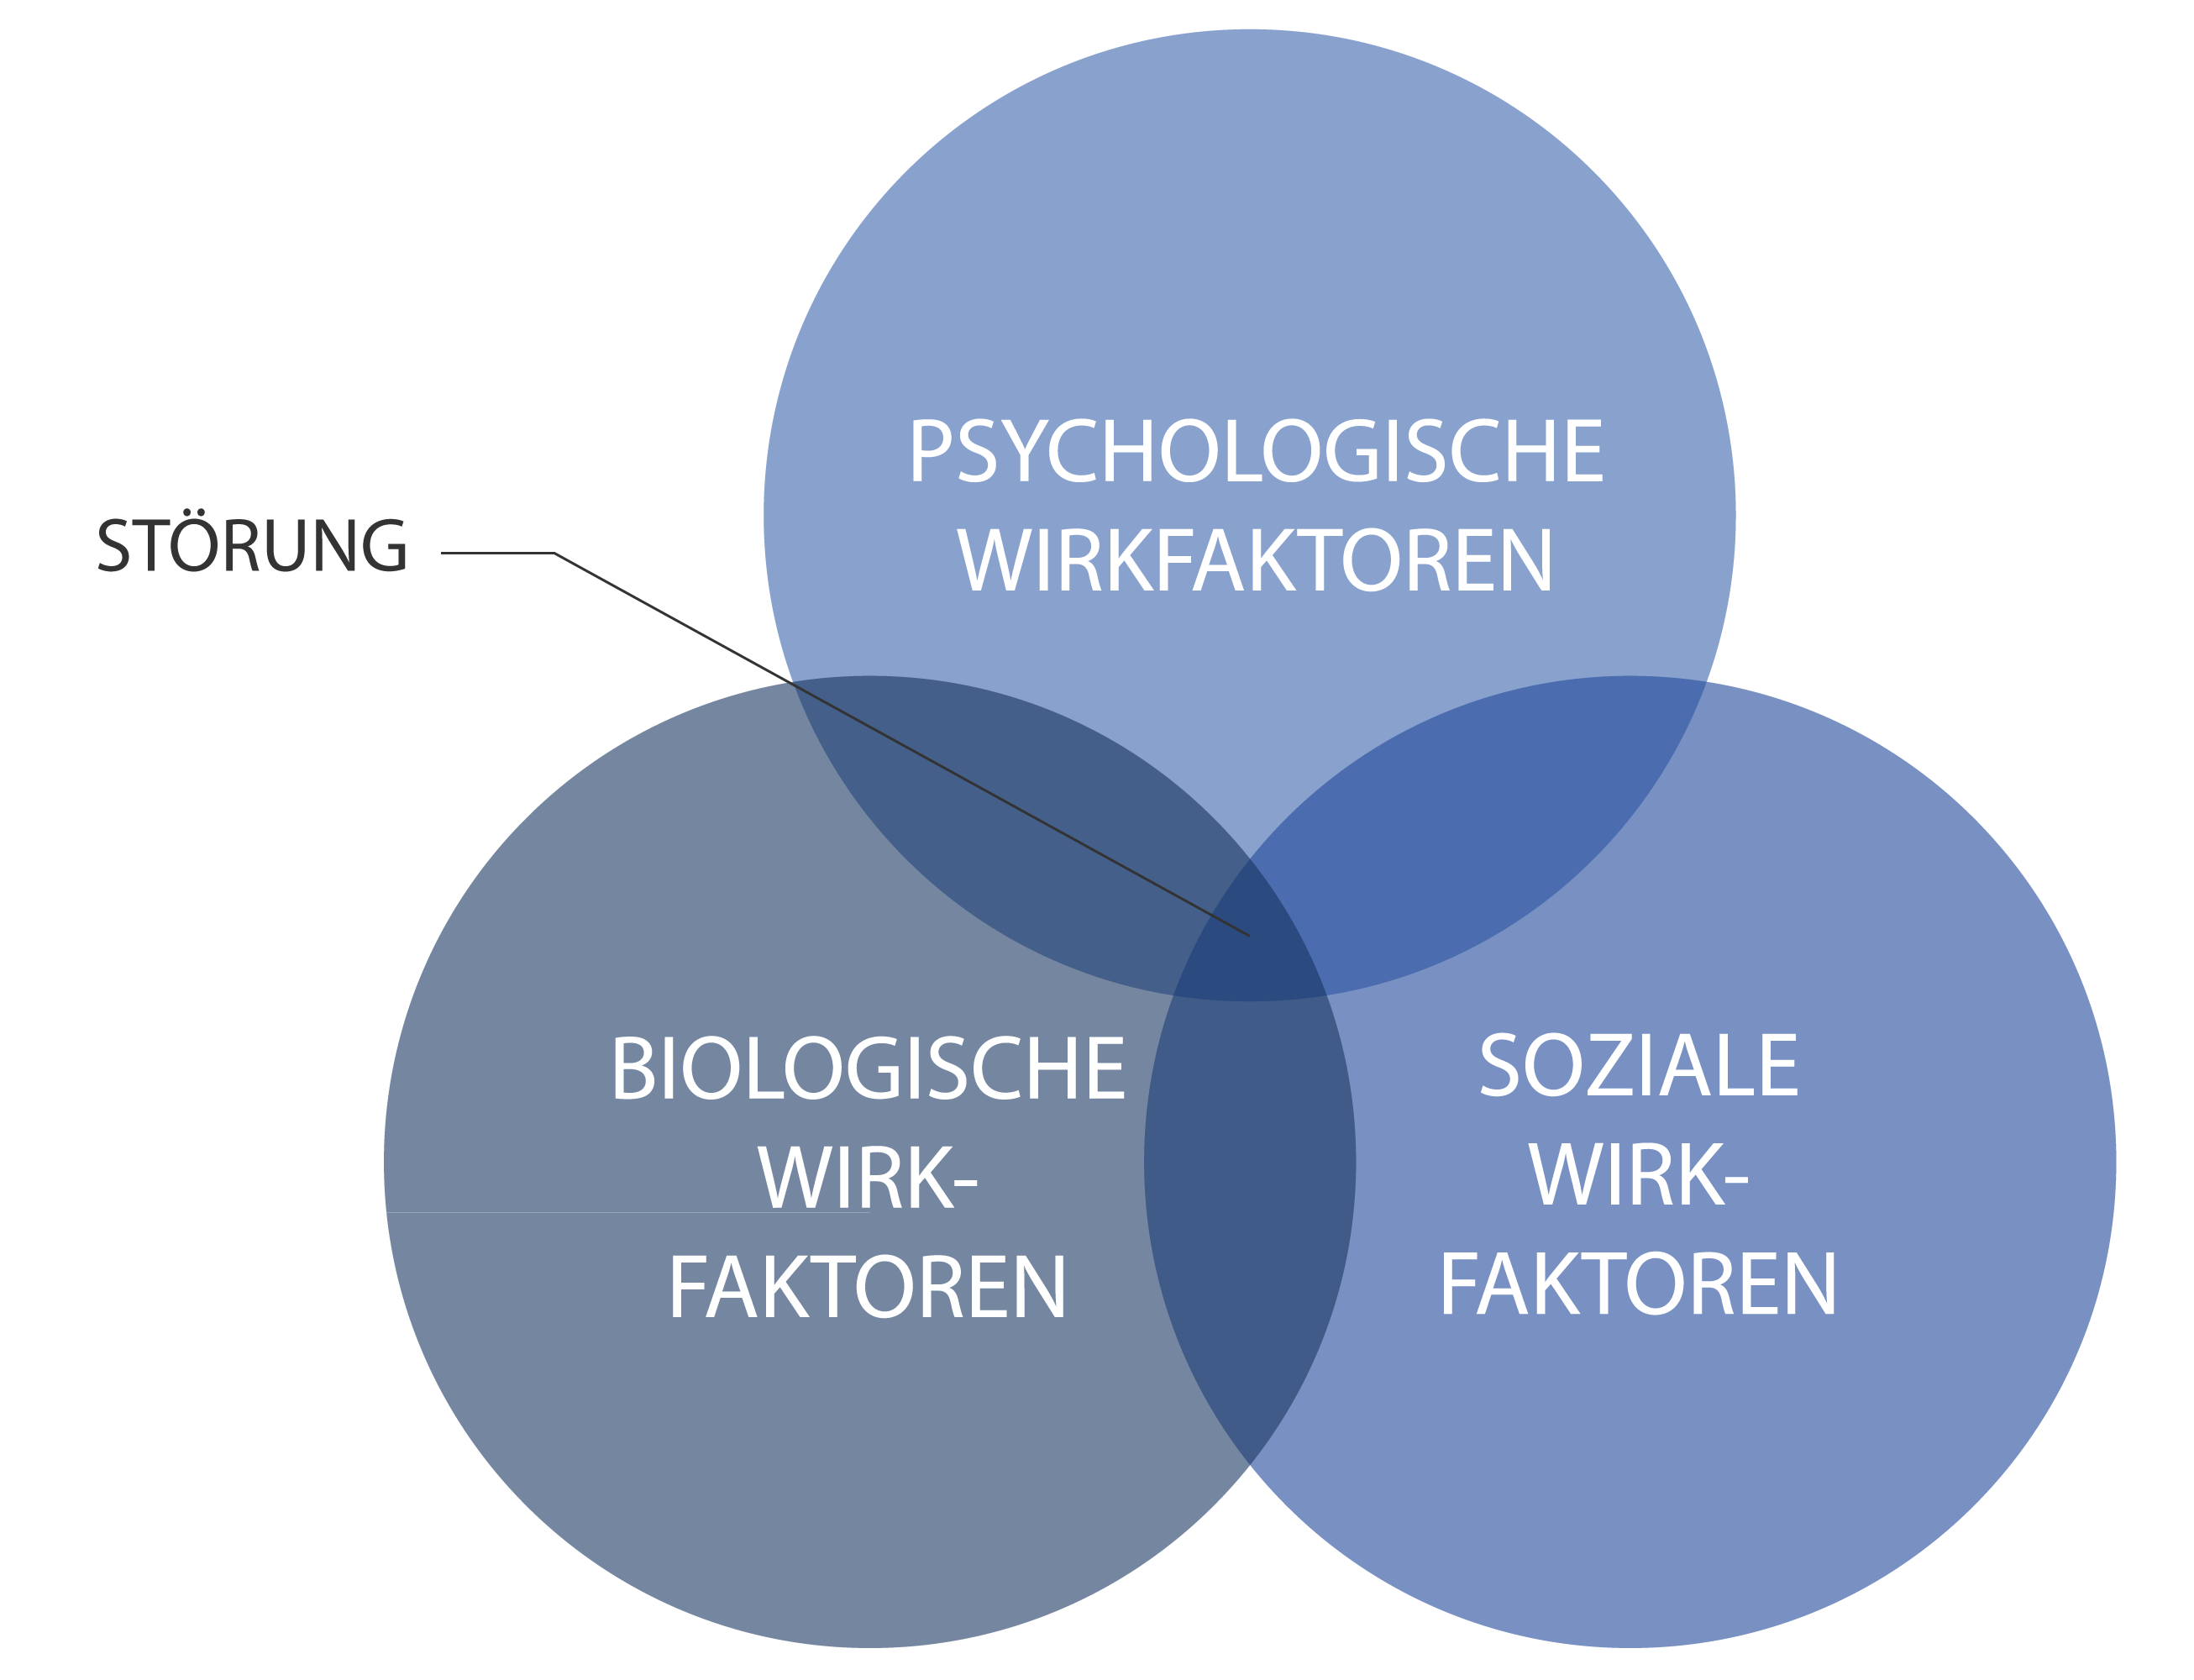 Das biopsychosoziale Modell
Quelle: Toni Muffel